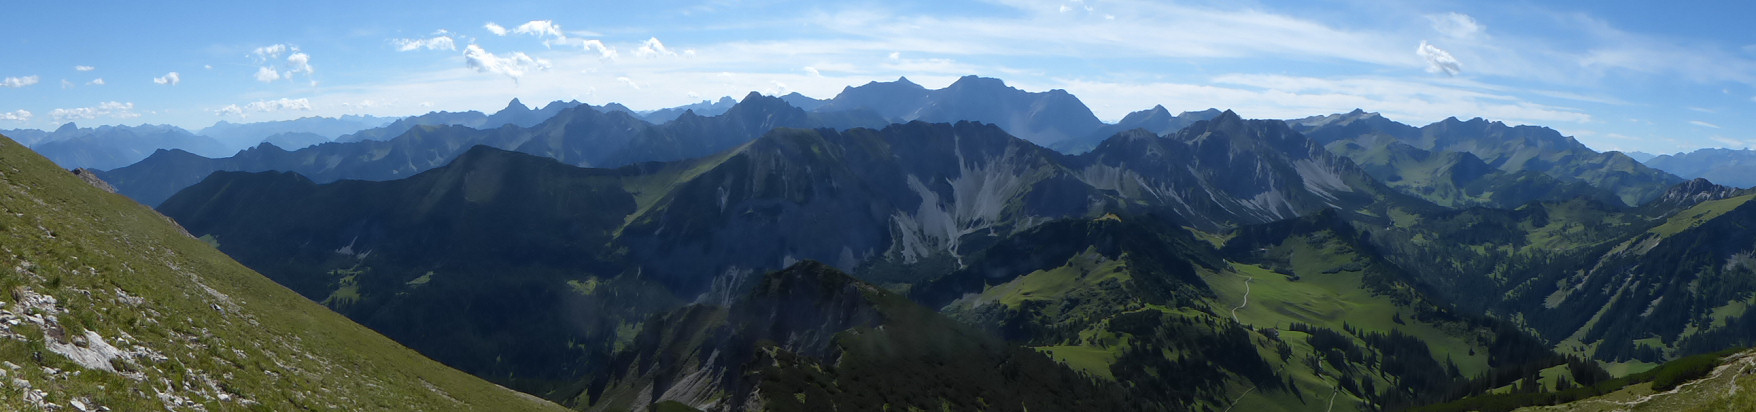 Panorama - Blick auf die Gipfel im Rätikon